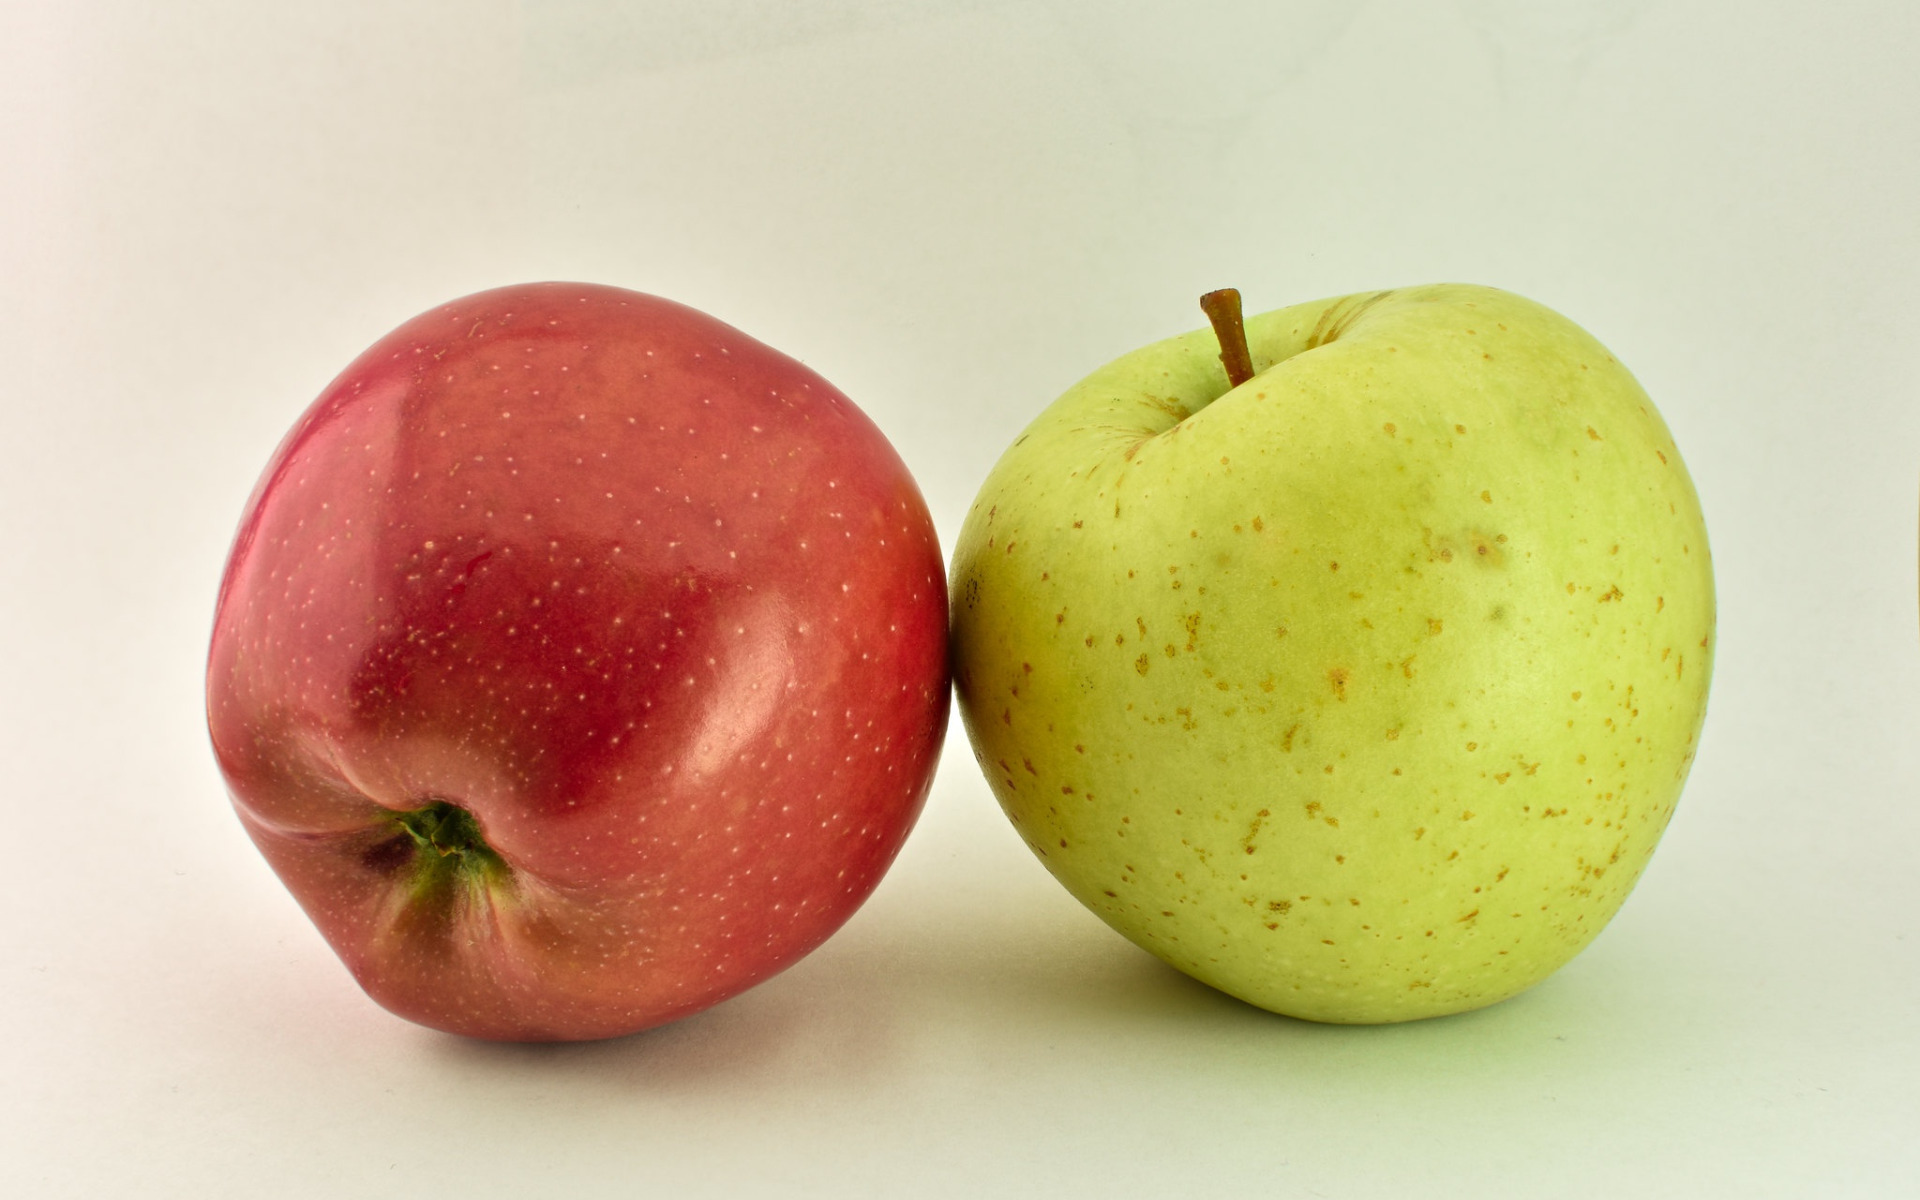 Включи 3 яблока. Яблоко. Яблоко 2. Разные яблоки. Одно яблоко.